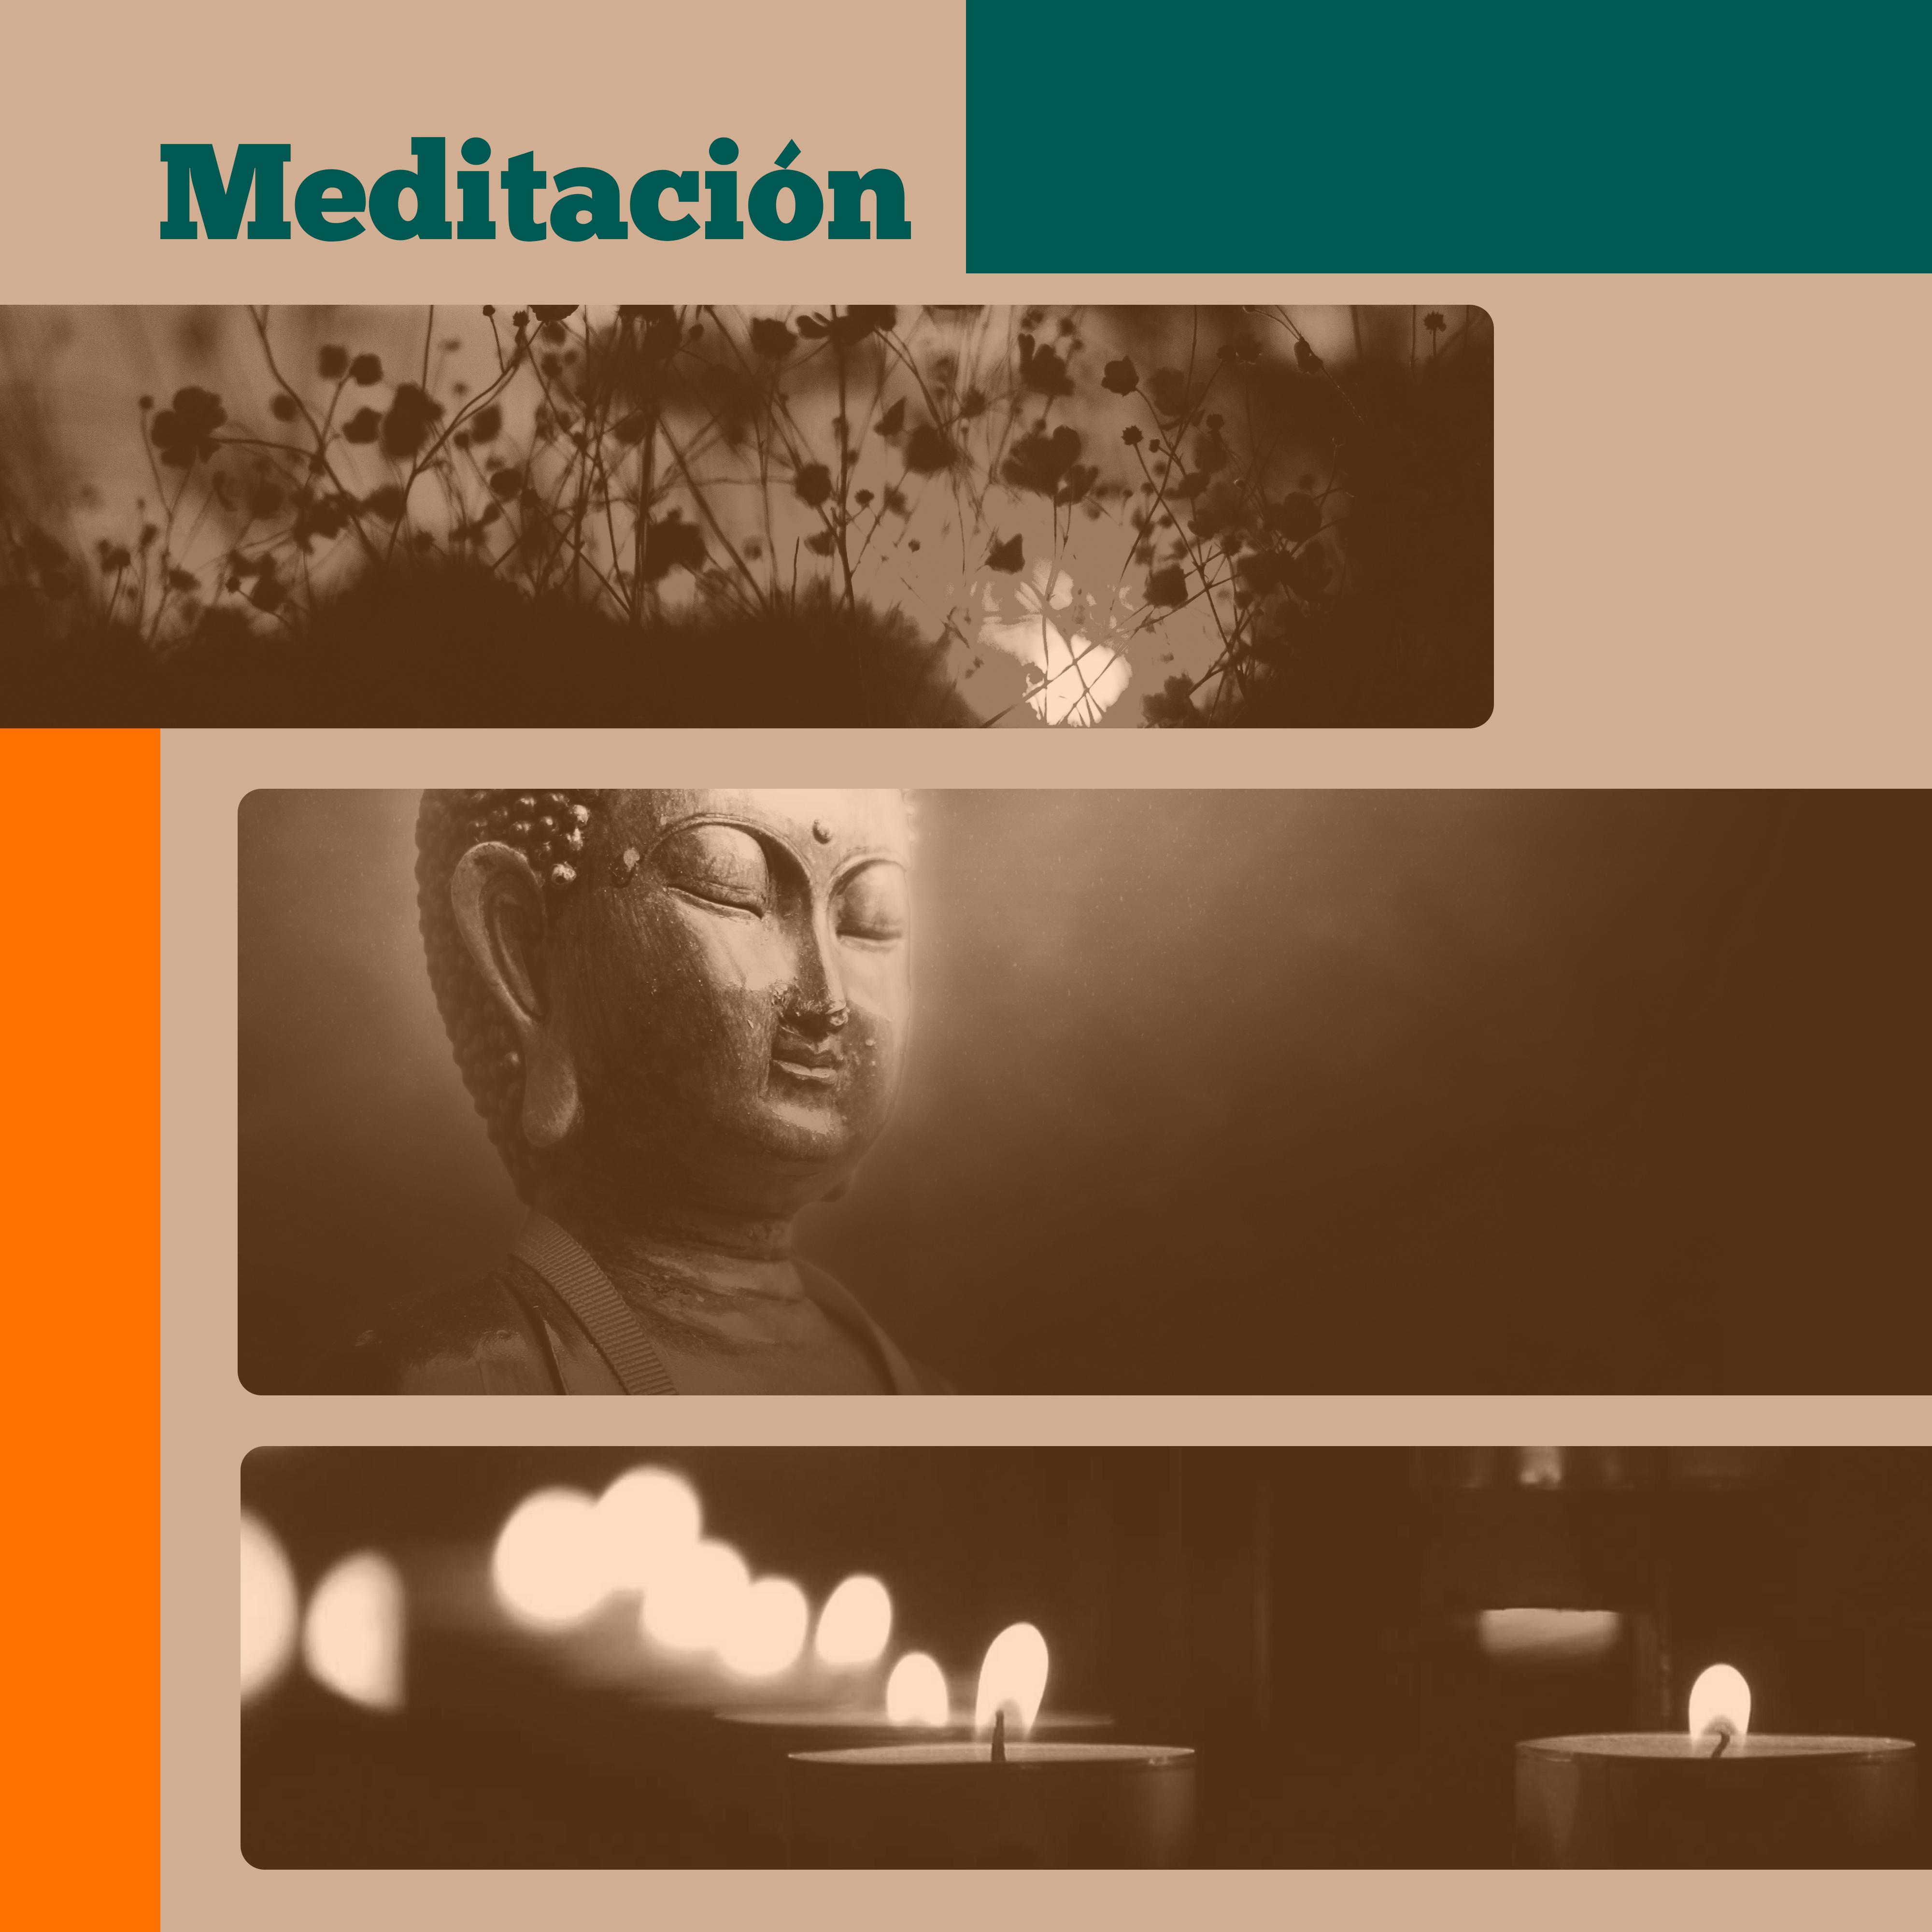 Meditacio n  Nueva Mu sica de la Edad, Yoga Meditacio n, Mu sica Relajante Calma, la Contemplacio n Profunda